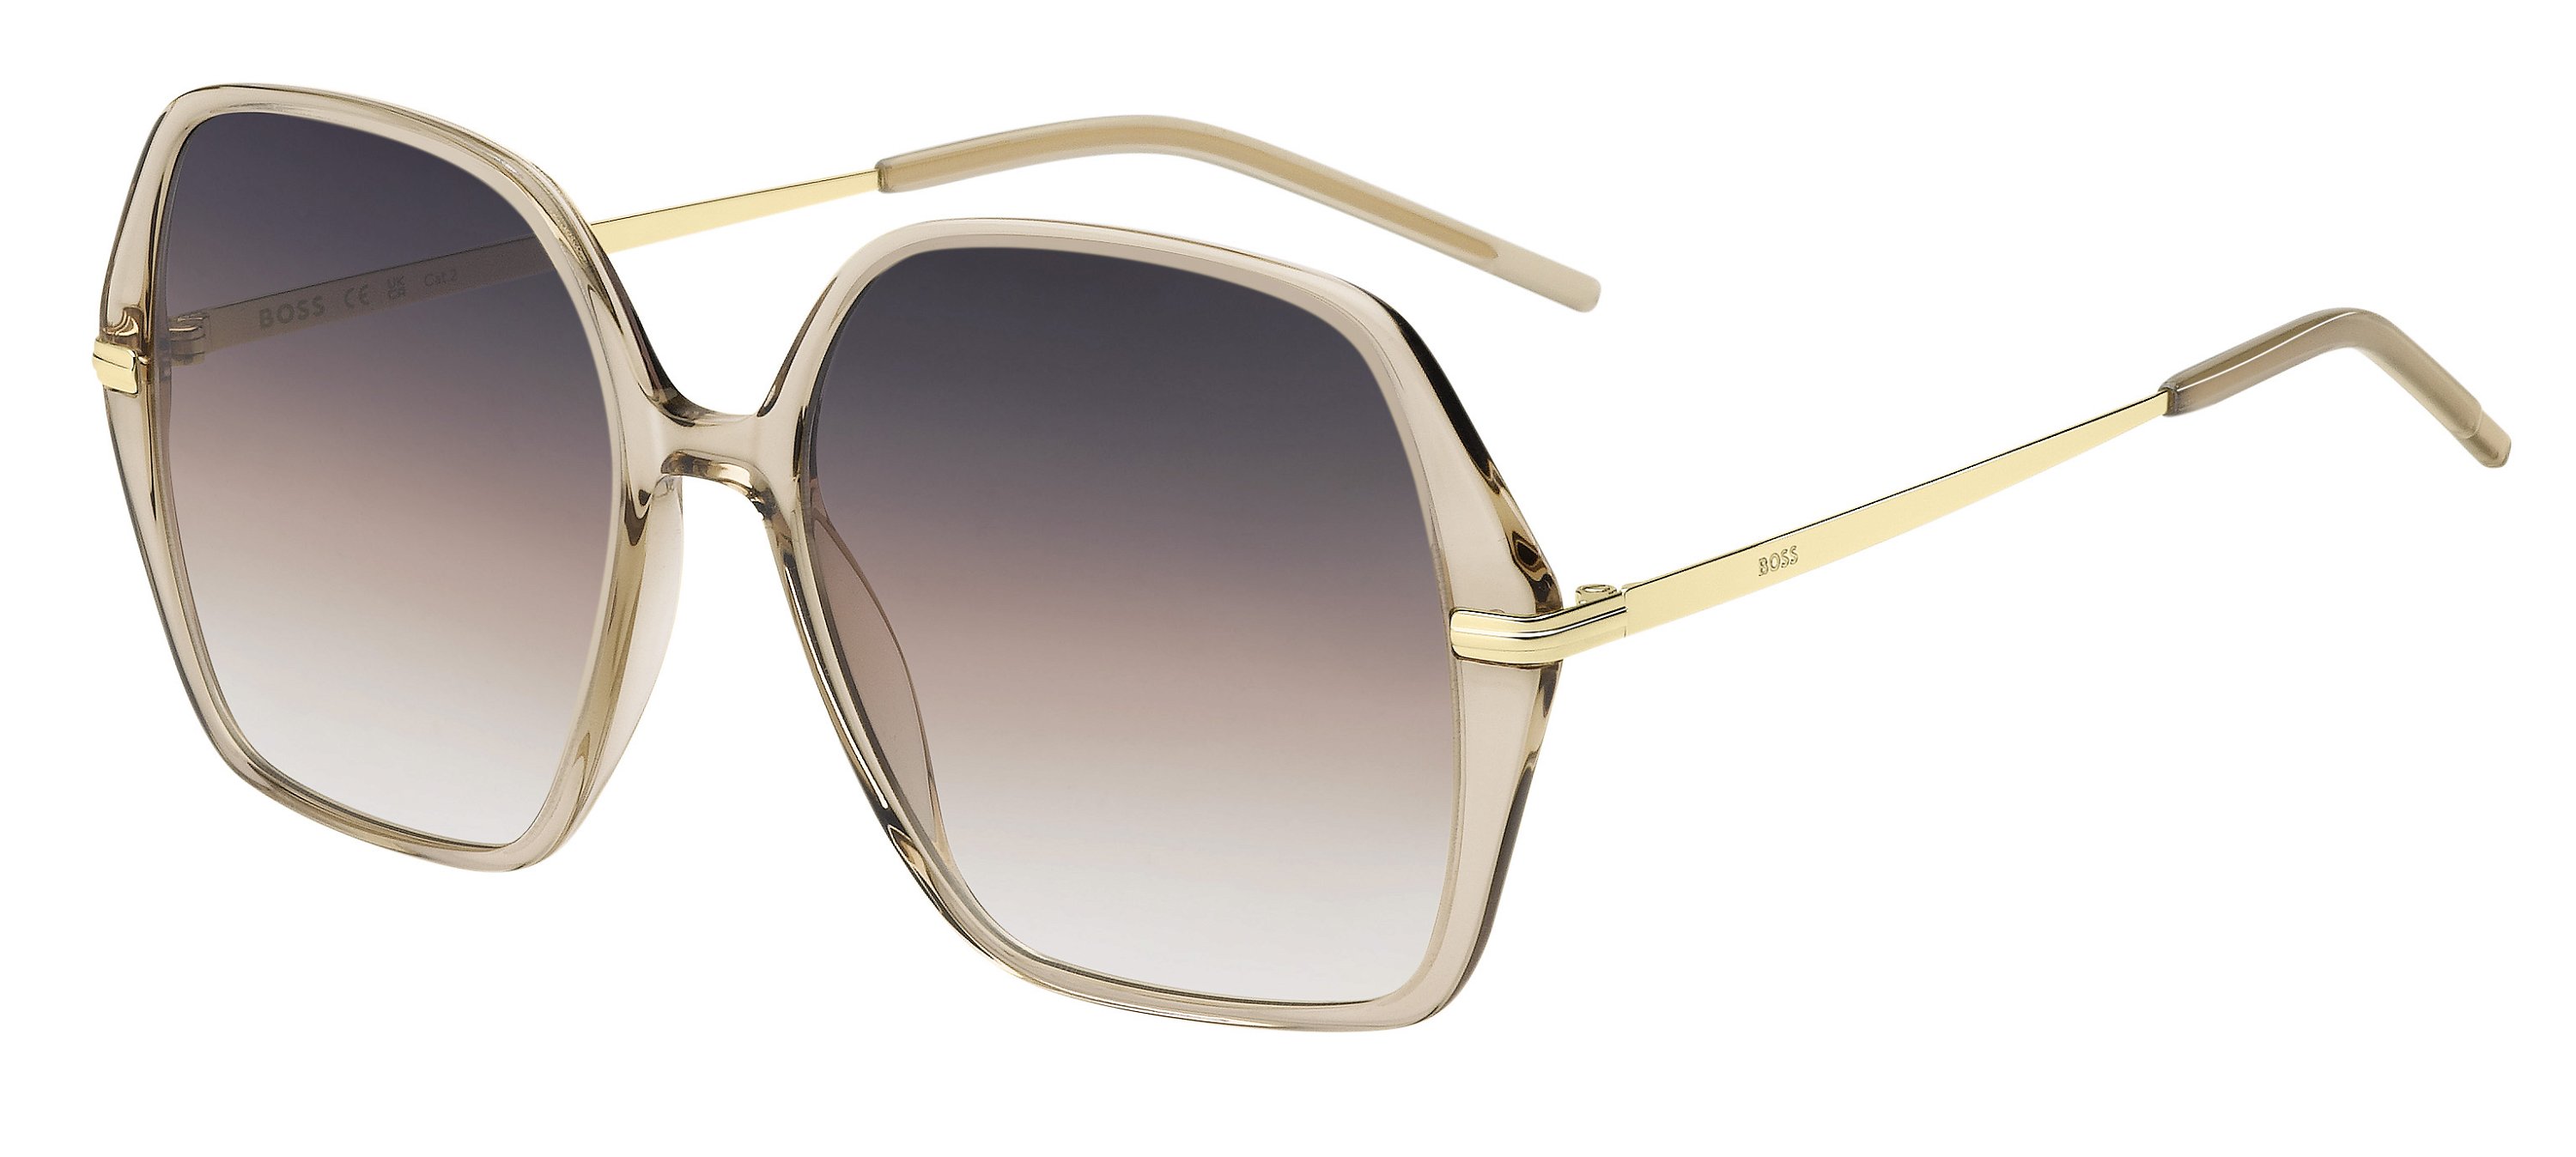 Das Bild zeigt die Sonnenbrille BOSS1660S 84A von der Marke BOSS in Nude/Gold.